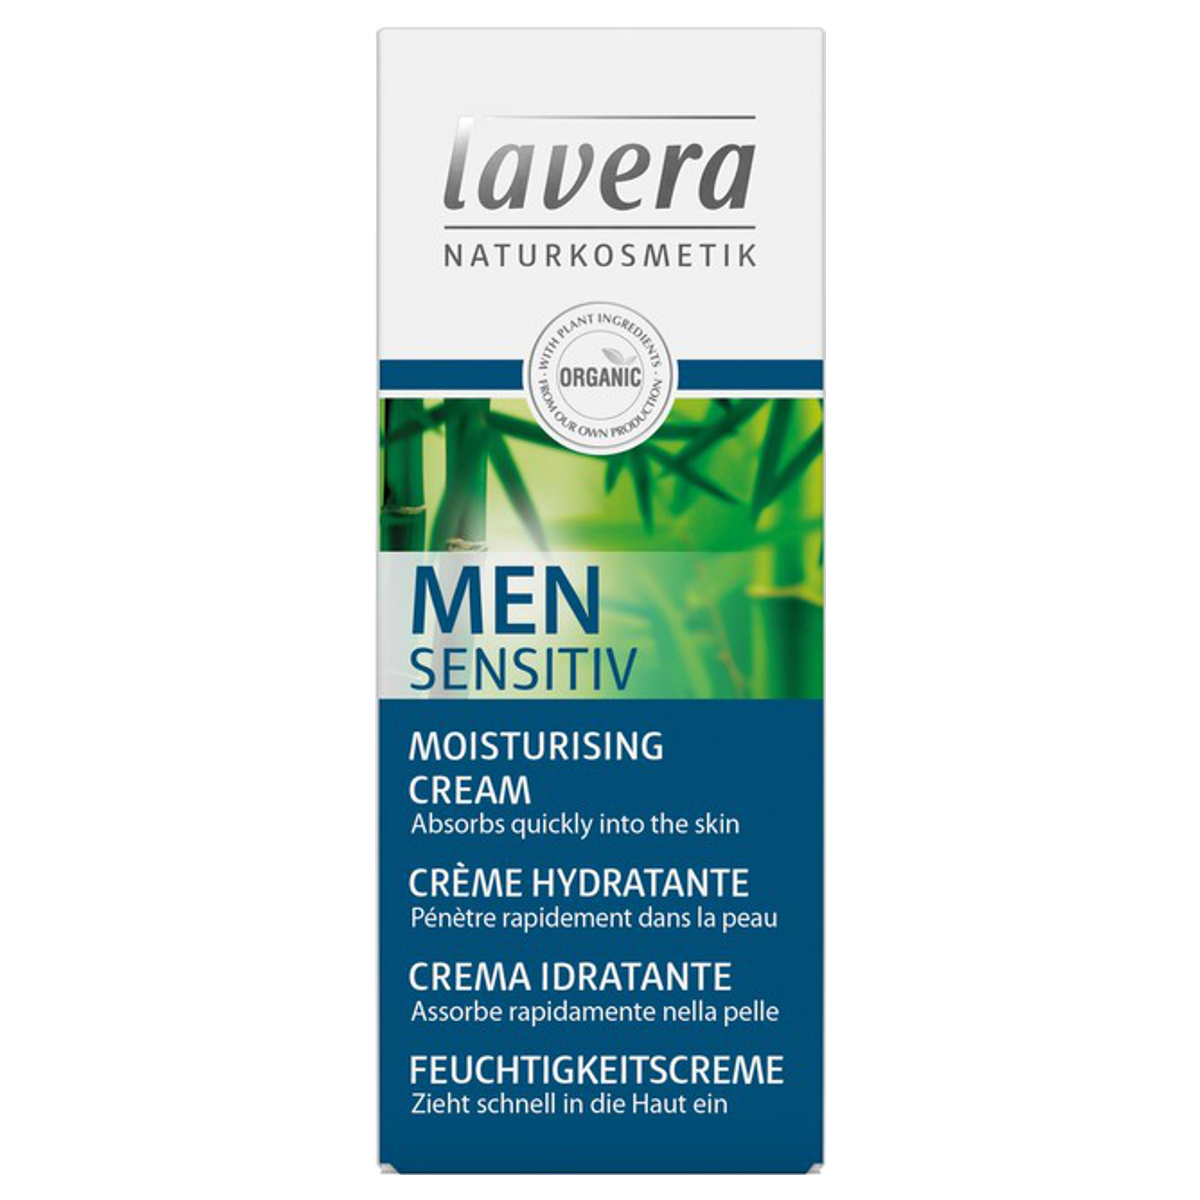 Lavera_Men_Sensitive_Feuchtigkeitscreme_online_kaufen